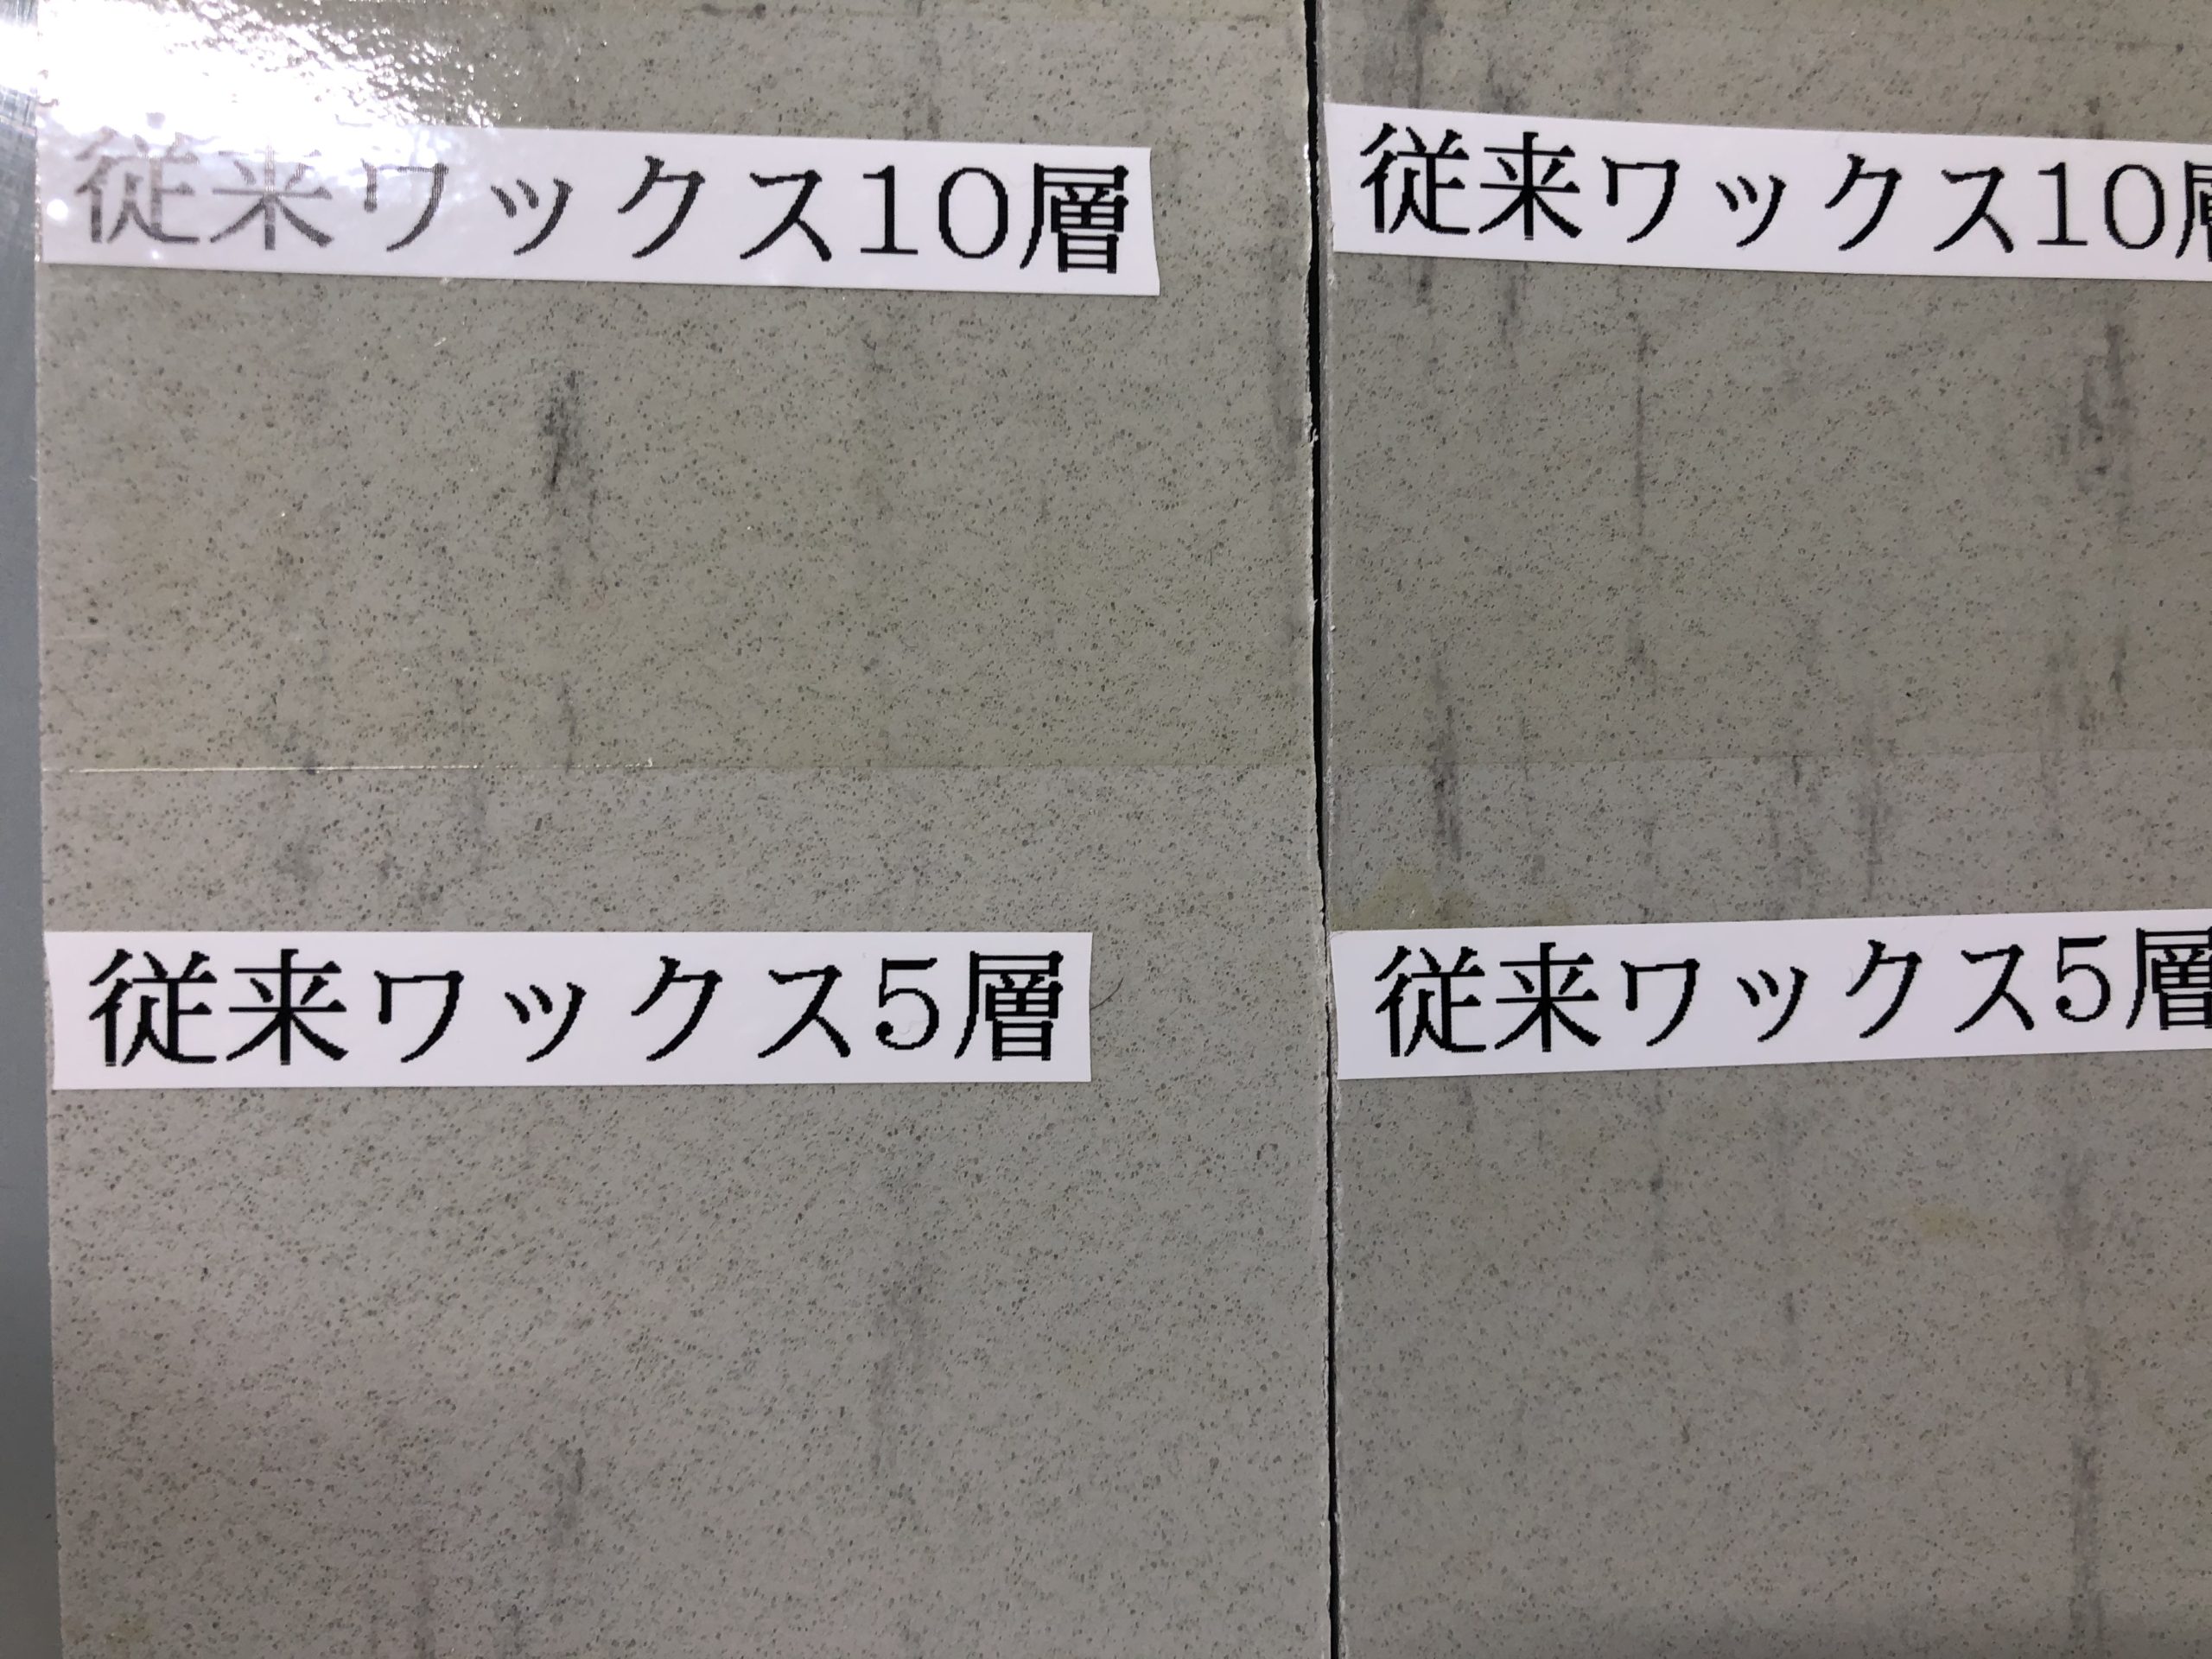 床の定期清掃で使われる従来の業務用ワックスとマコムのワックス黄変具合を比べてみた！ | 神奈川・東京・埼玉・千葉で清掃業者をお探しならマコム